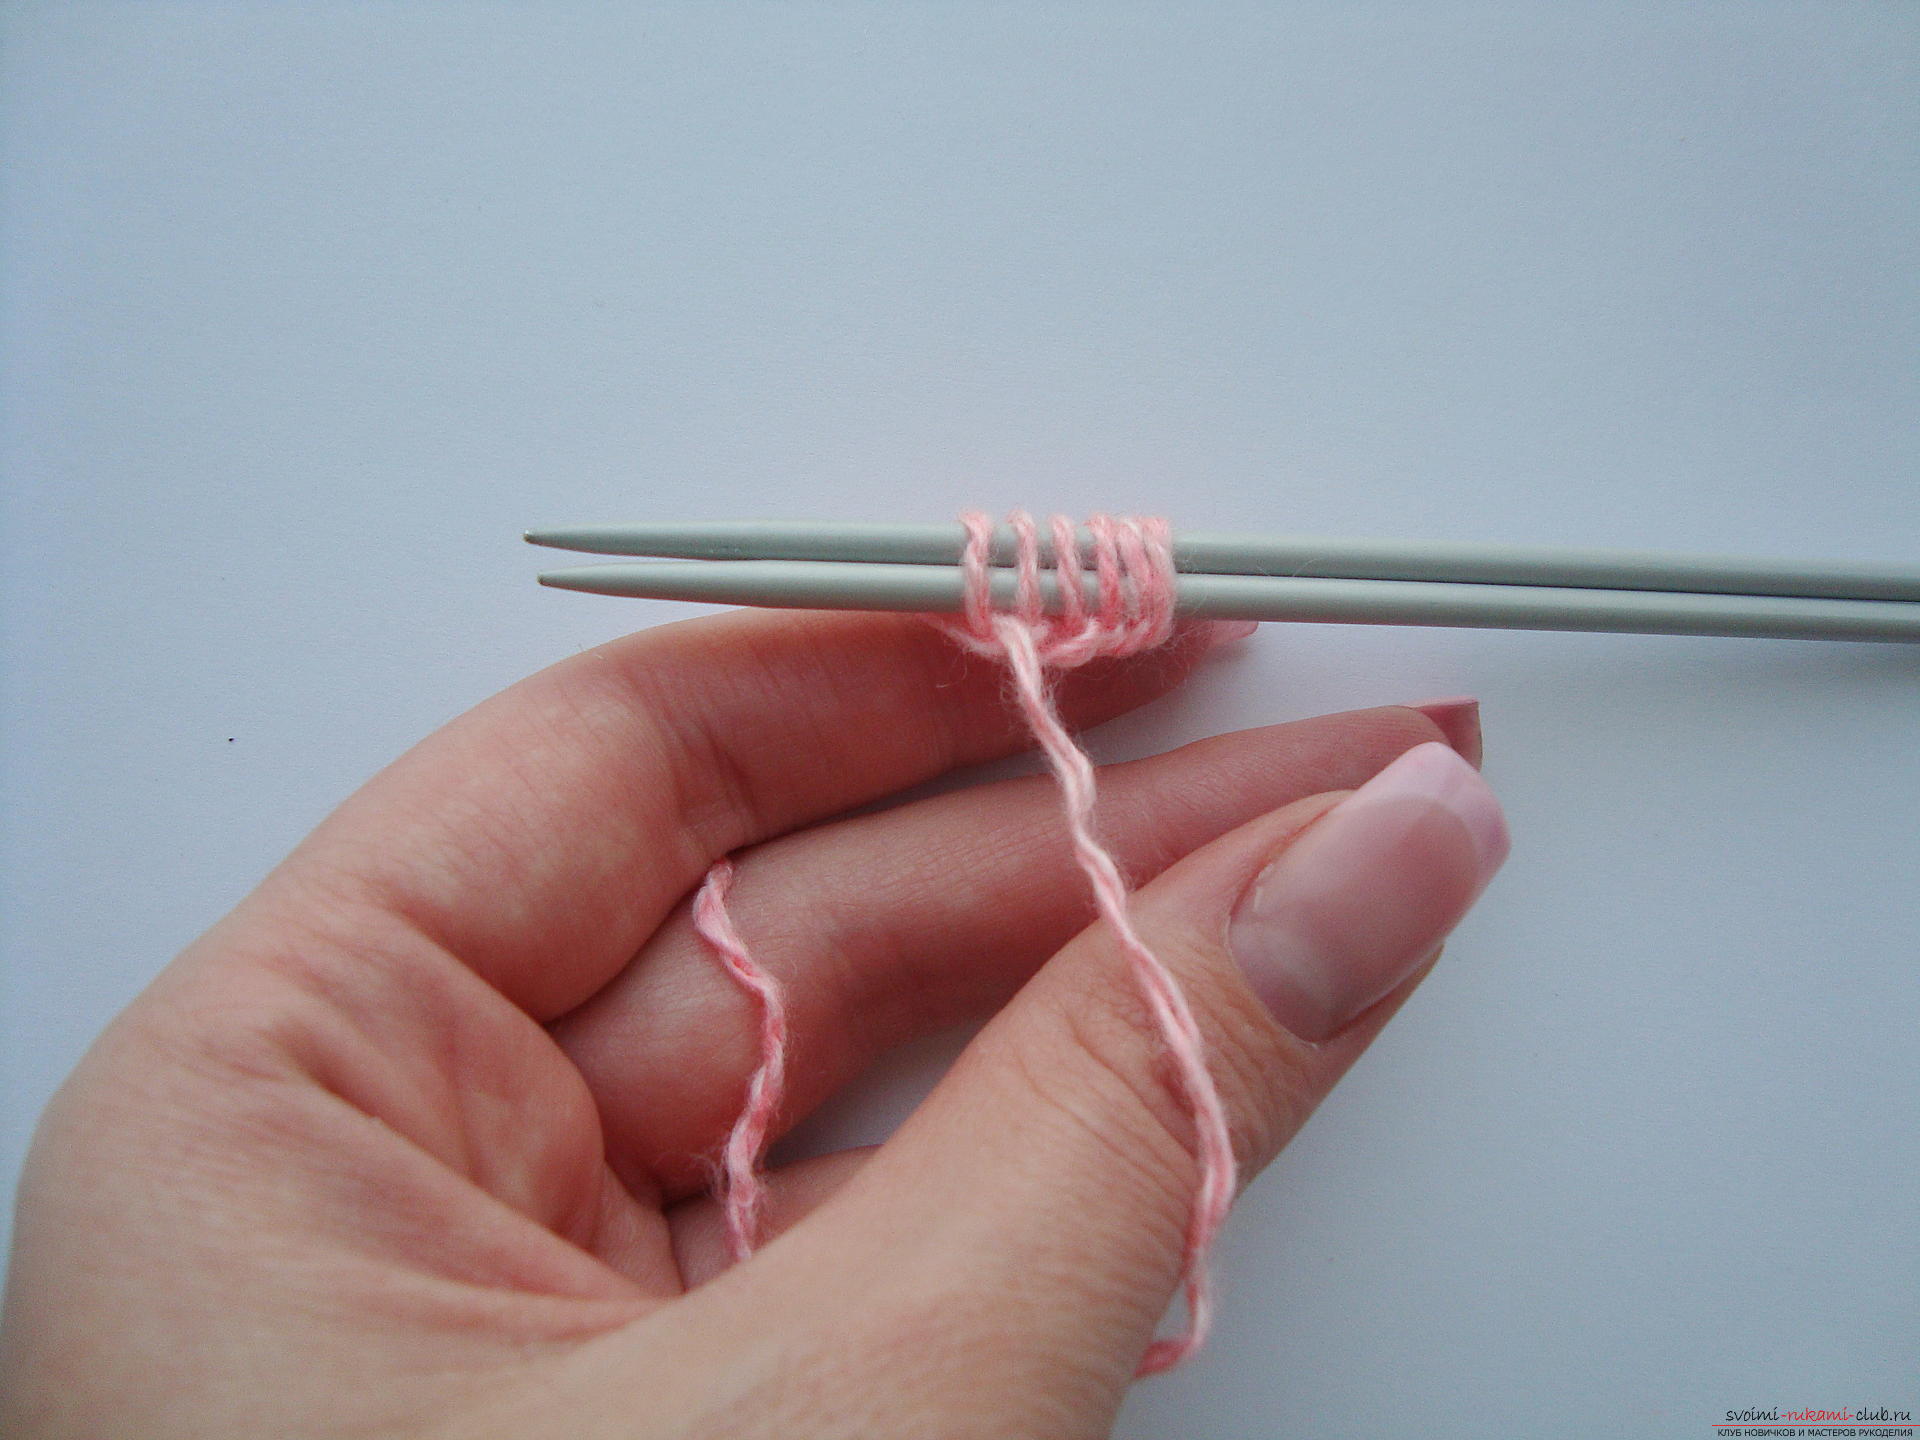 Photo-instruction on knitting needles-napkins under the hot. Photo №4